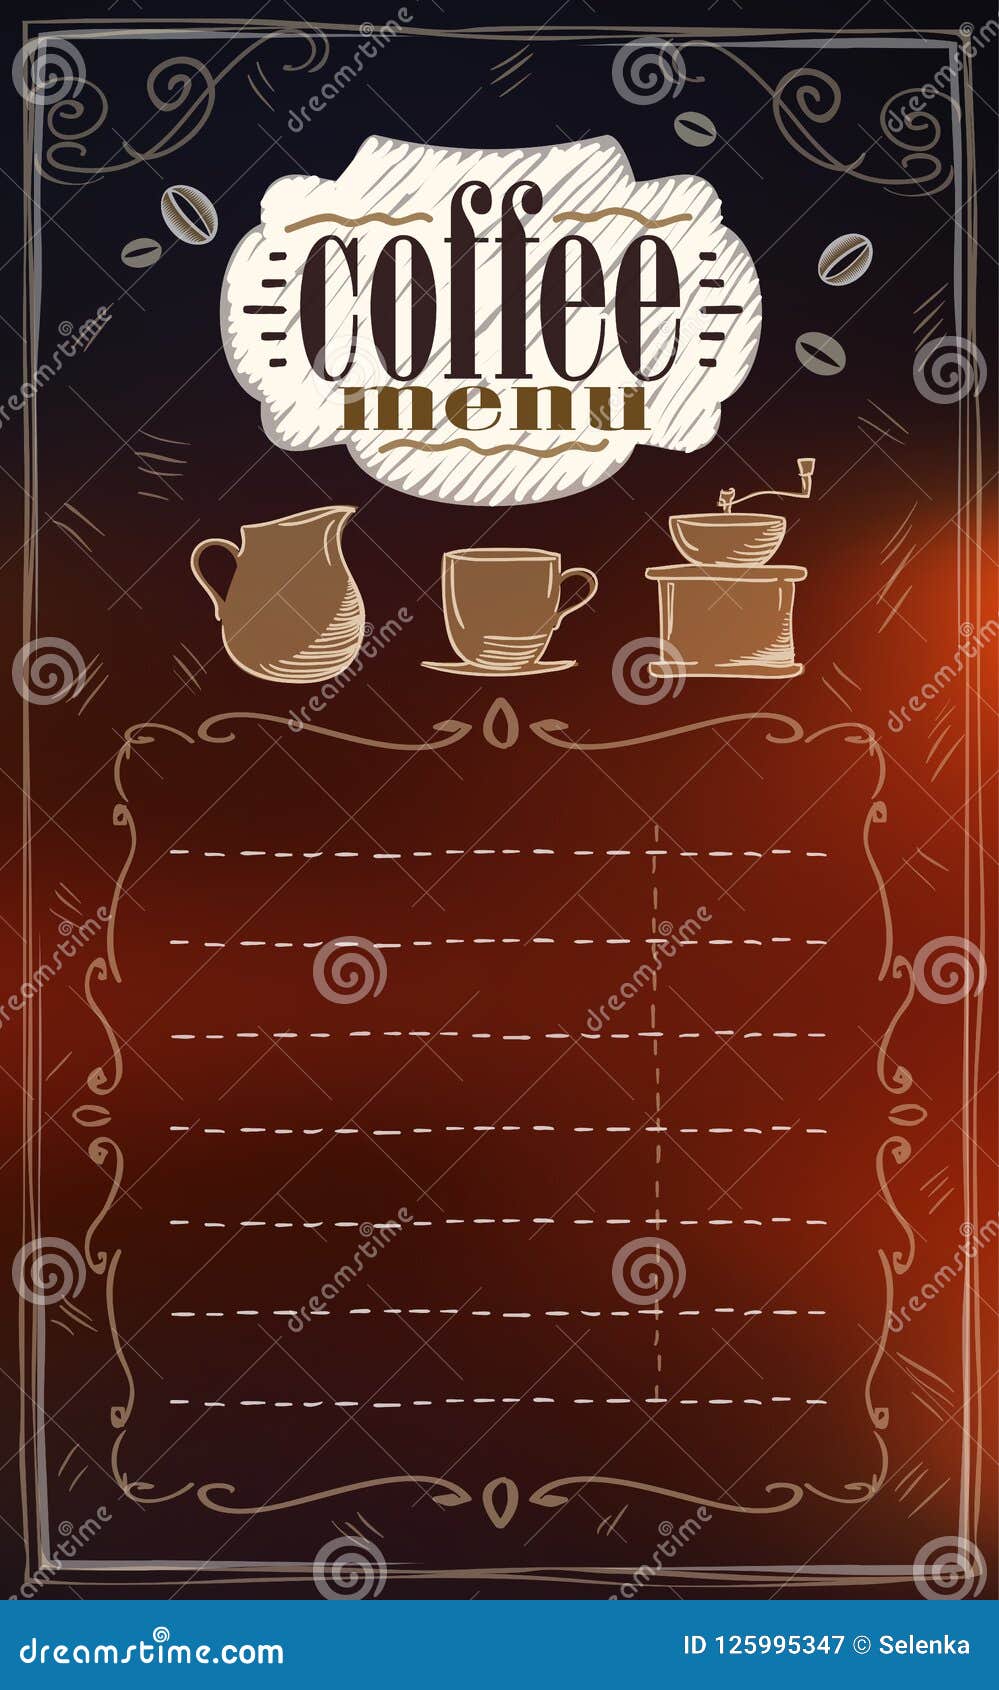 Danh sách menu cà phê với hơn 20 loại cà phê đậm đà, thơm ngon chắc chắn sẽ khiến bạn không thể bỏ qua. Từ cà phê đen đơn giản đến những loại cà phê đặc biệt được pha chế tinh tế, tại đây sẽ đáp ứng được mọi nhu cầu của bạn.